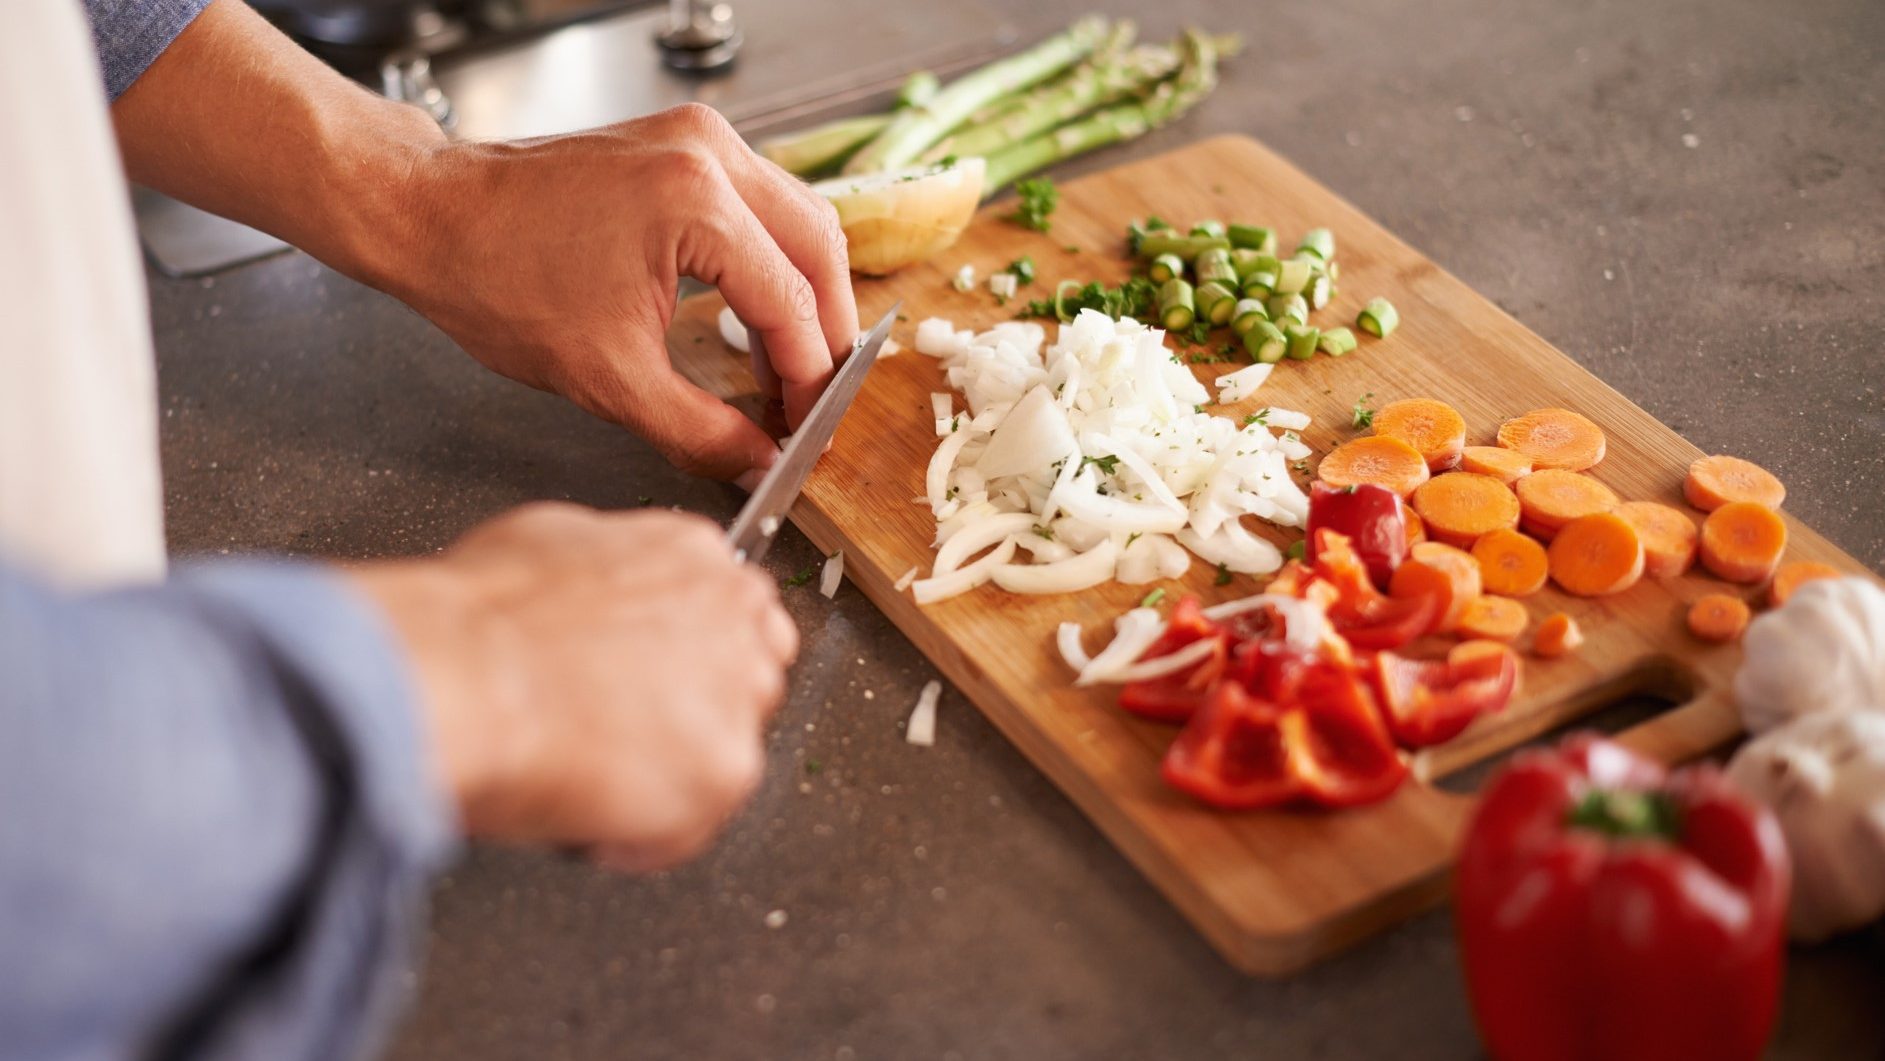 Hände zerteilen Zwiebeln, rohen Spargel und rote Paprika für gesunde Mahlzeit auf dunkler Arbeitsplatte.